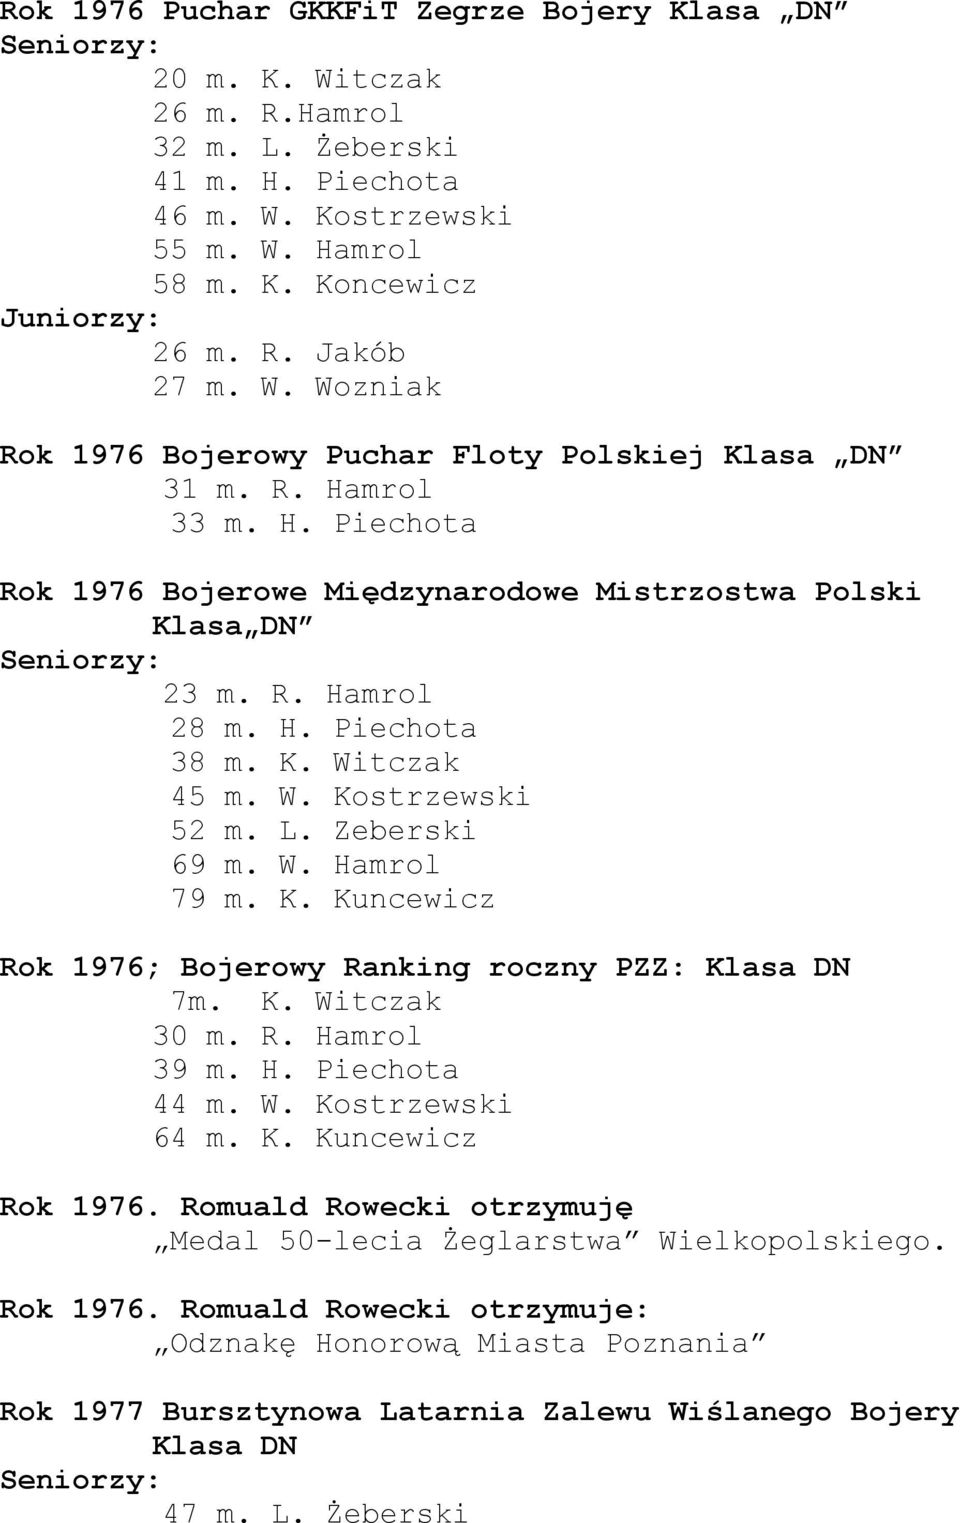 W. Kostrzewski 52 m. L. Zeberski 69 m. W. Hamrol 79 m. K. Kuncewicz Rok 1976; Bojerowy Ranking roczny PZZ: 7m. K. Witczak 30 m. R. Hamrol 39 m. H. Piechota 44 m. W. Kostrzewski 64 m. K. Kuncewicz Rok 1976. Romuald Rowecki otrzymuję Medal 50-lecia Żeglarstwa Wielkopolskiego.